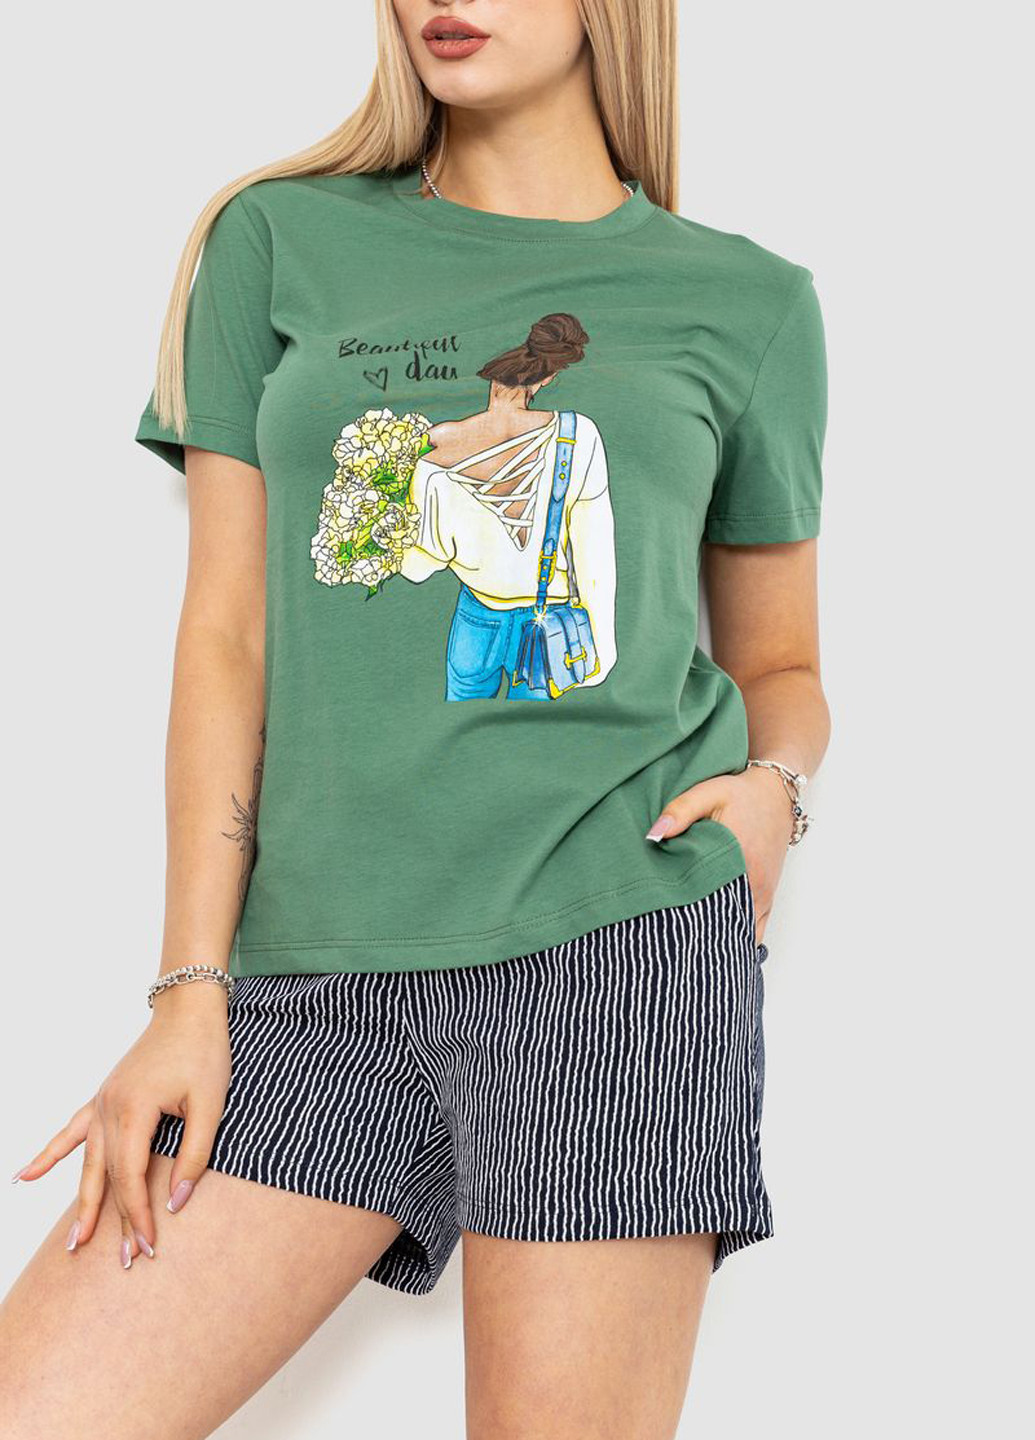 Комбинированная всесезон пижама (футболка, шорты) футболка + шорты Ager